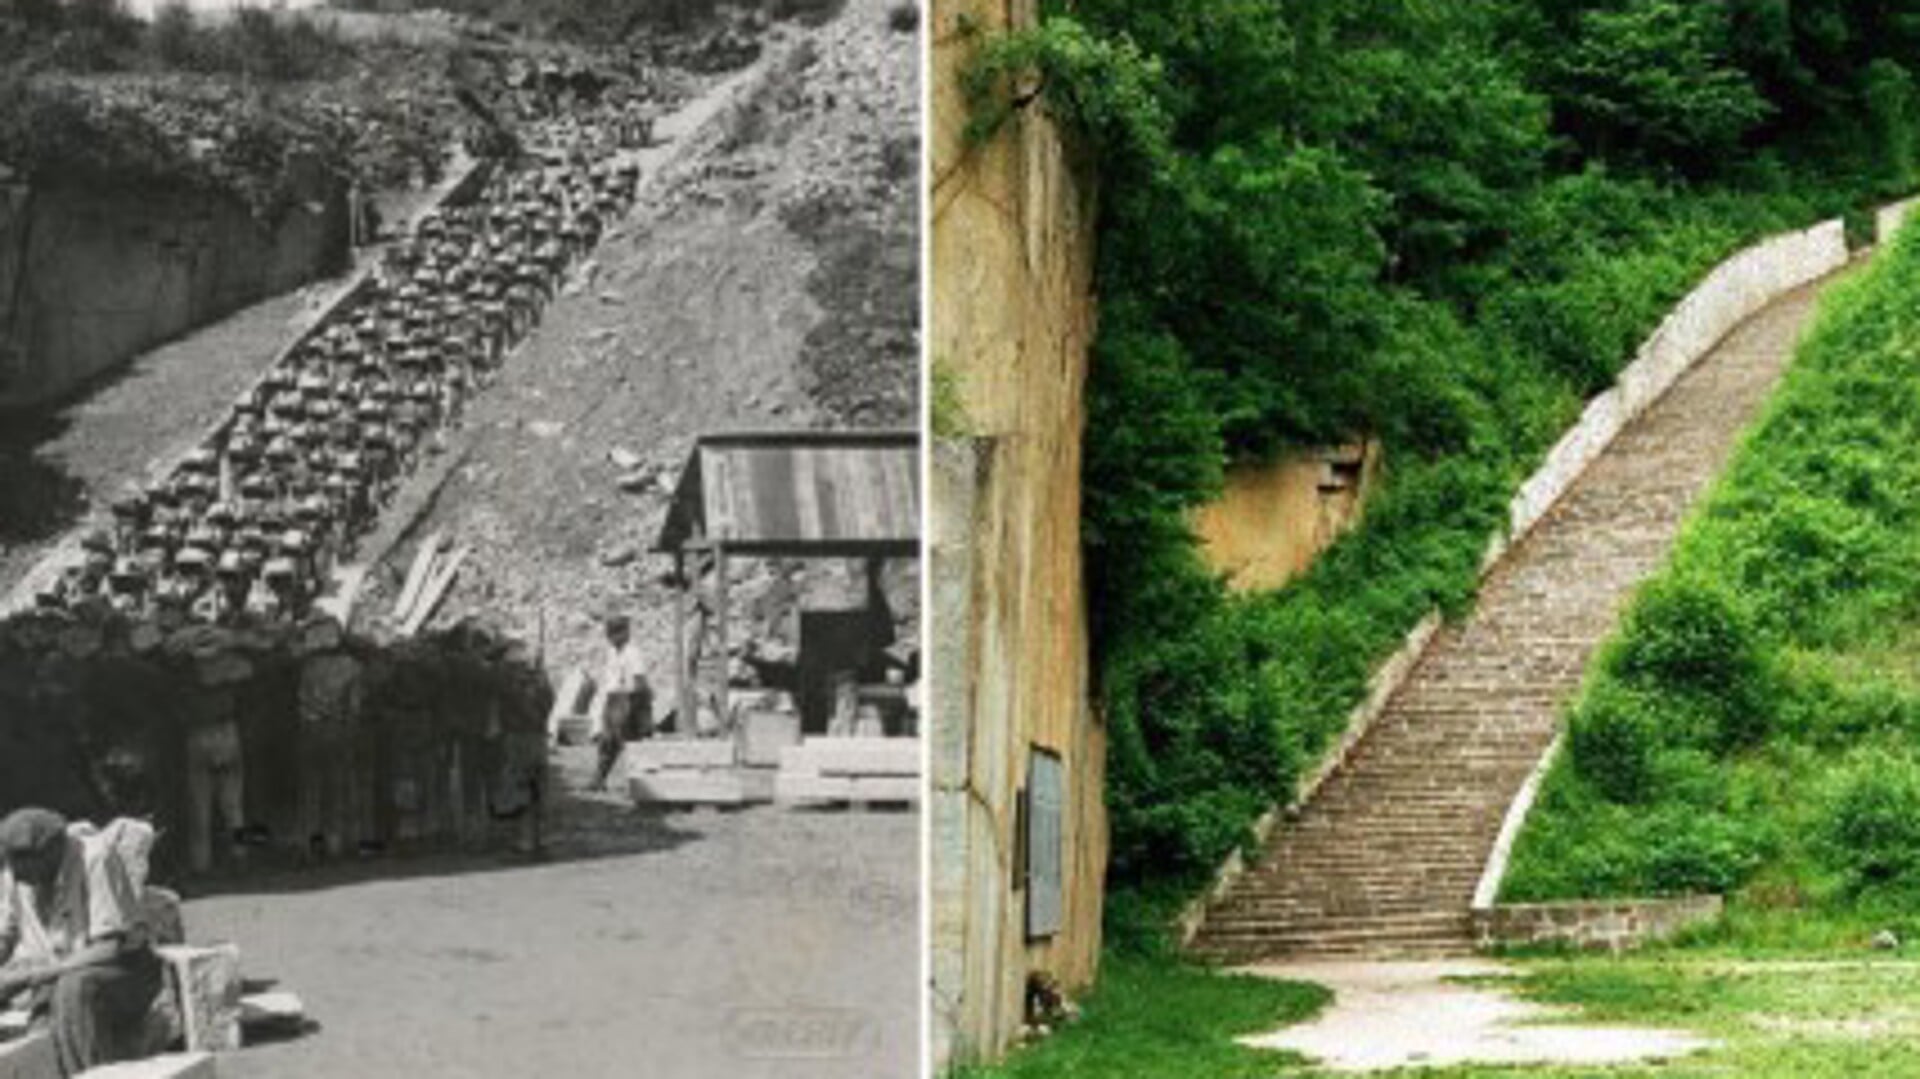 De trap des doods in concentratiekamp Mauthausen en de trap die er nu ligt. 